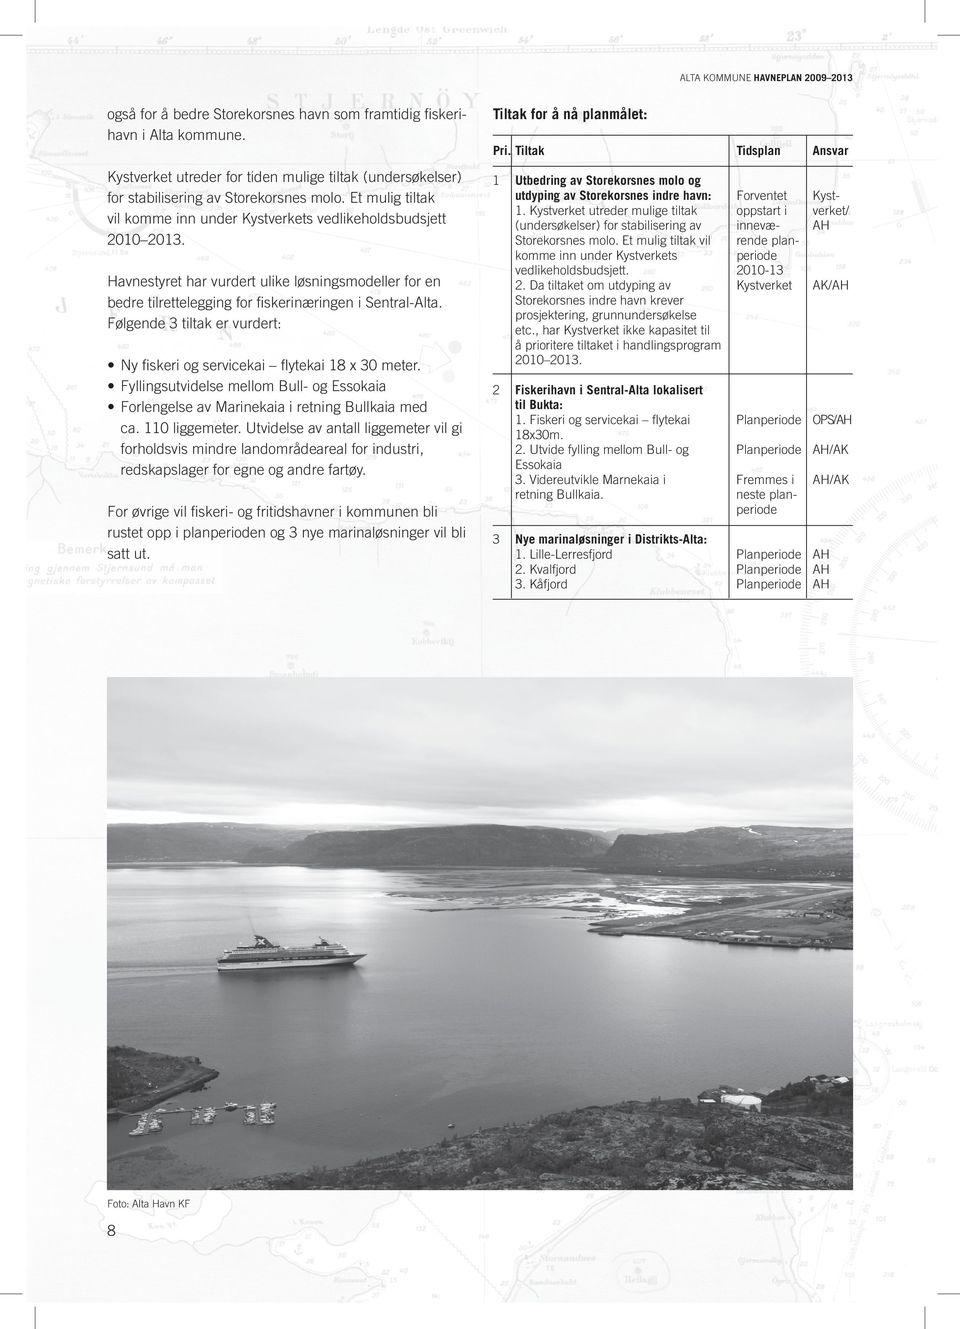 Havnestyret har vurdert ulike løsningsmodeller for en bedre tilrettelegging for fiskerinæringen i Sentral-Alta. Følgende 3 tiltak er vurdert: Ny fiskeri og servicekai flytekai 8 x 30 meter.